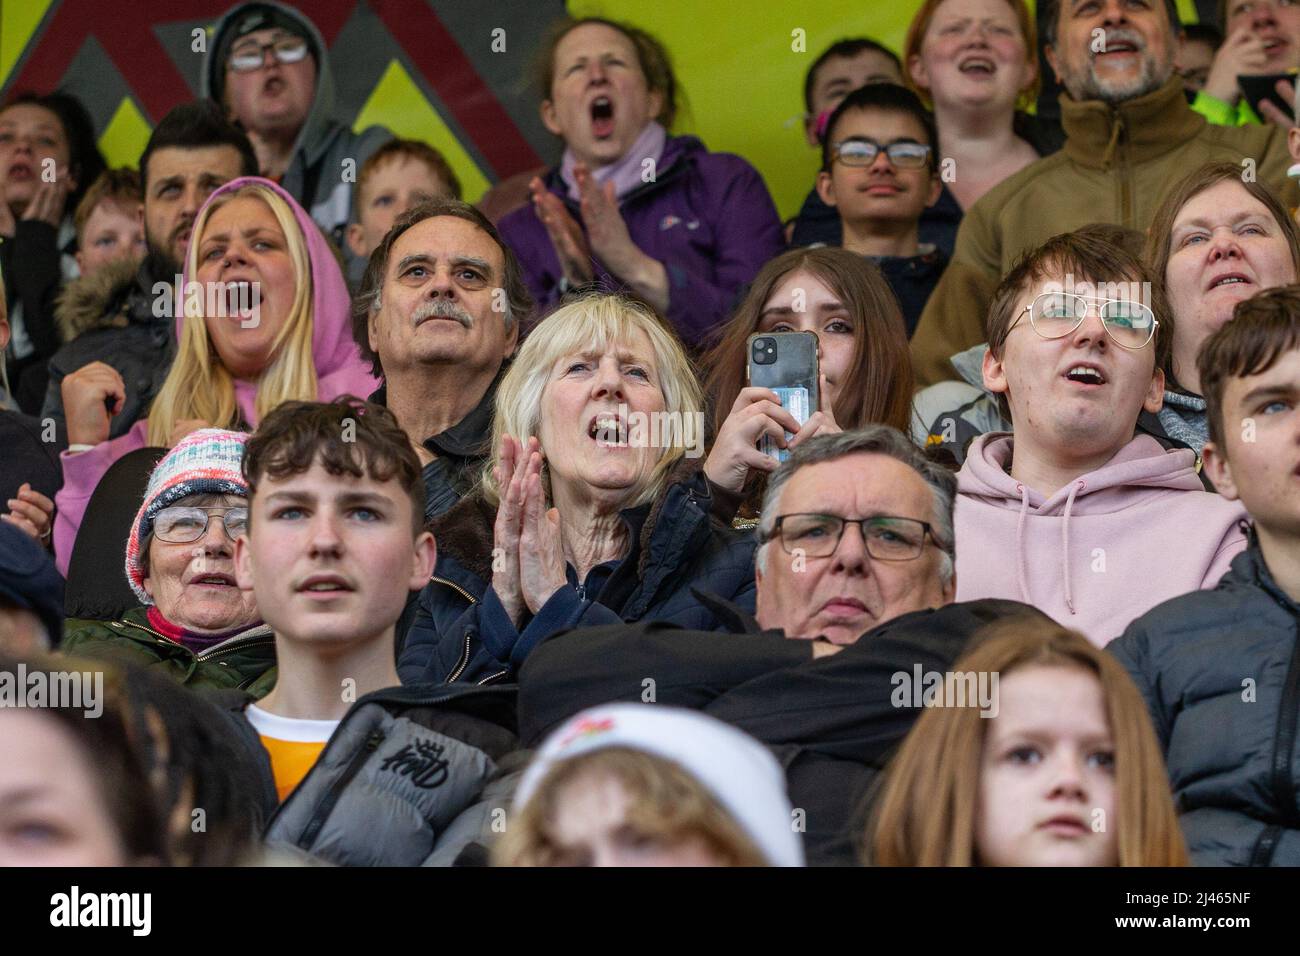 Gli appassionati di calcio e gli spettatori con espressioni facciali reagiscono al gioco che stanno guardando Foto Stock